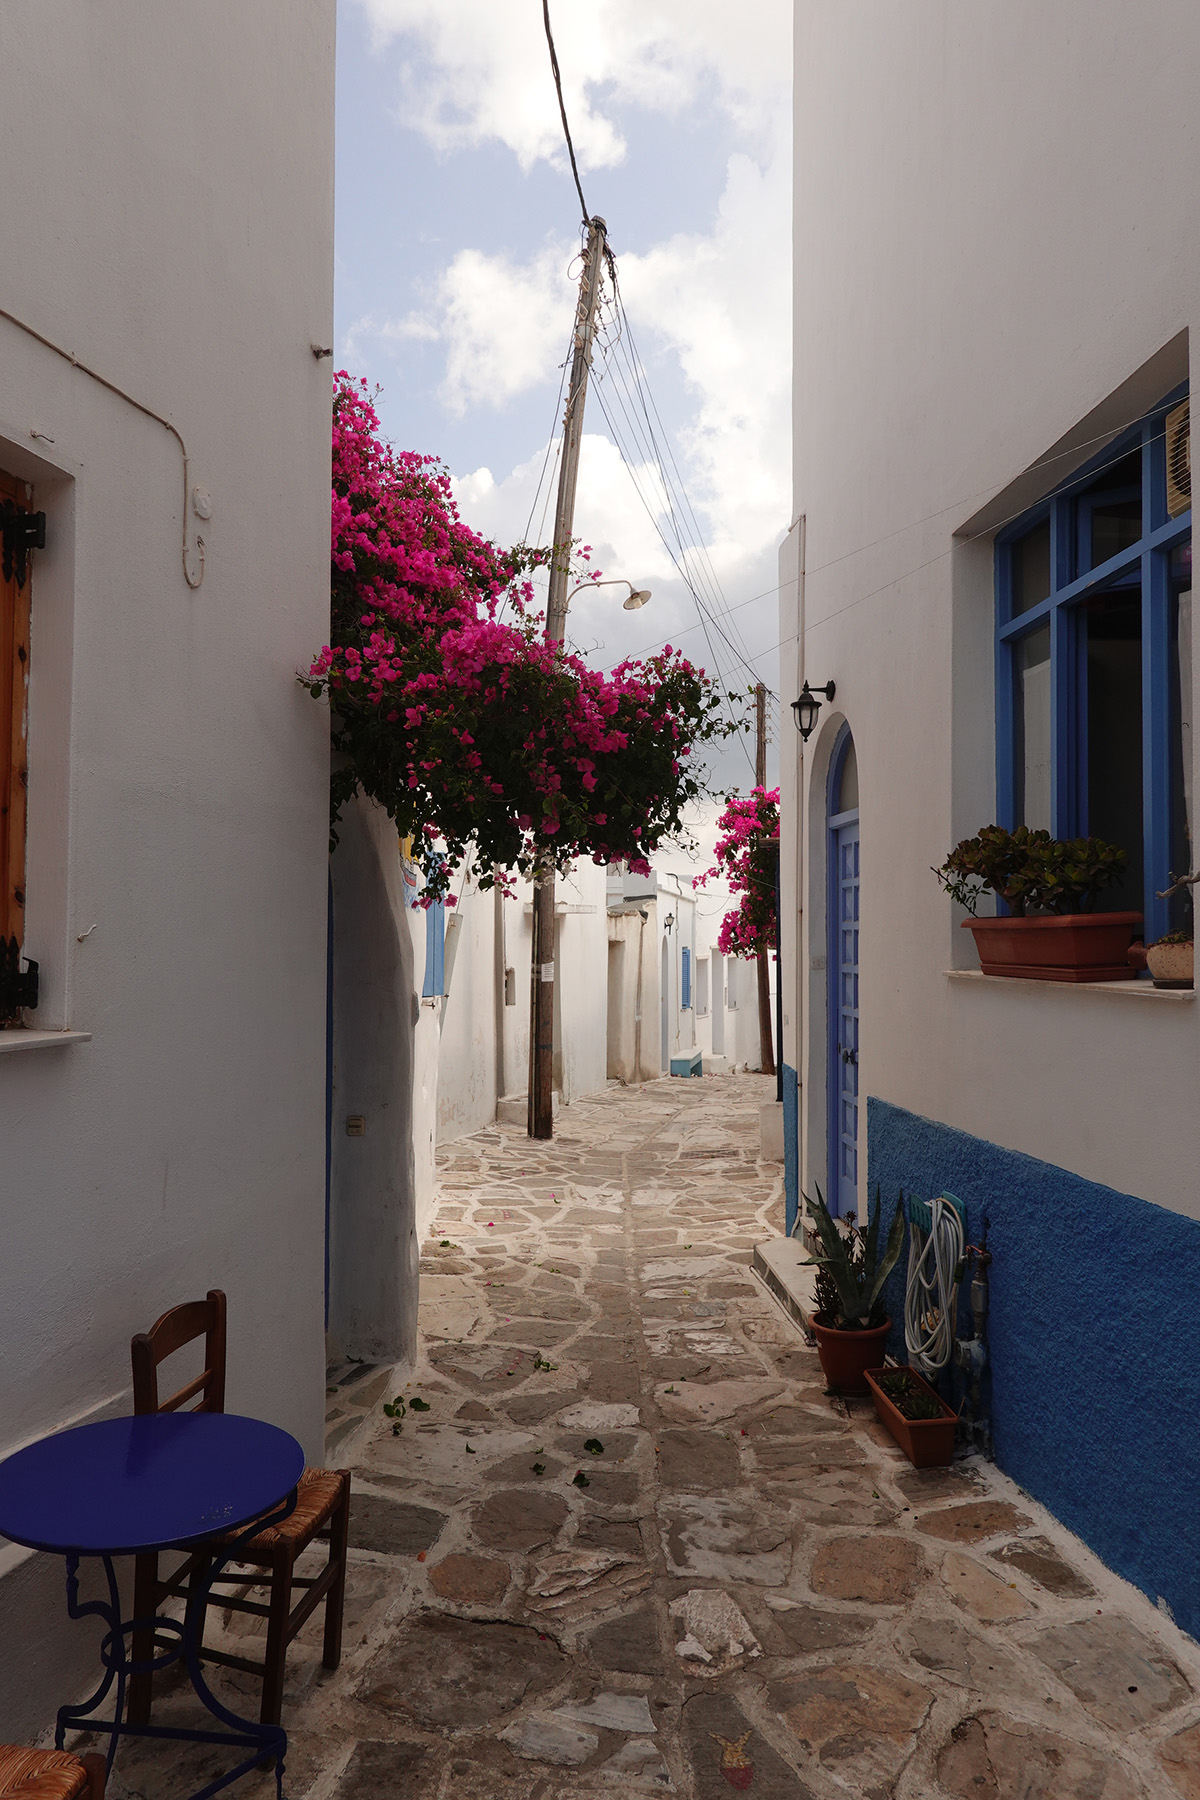 Mon voyage sur l'île Paros en Grèce